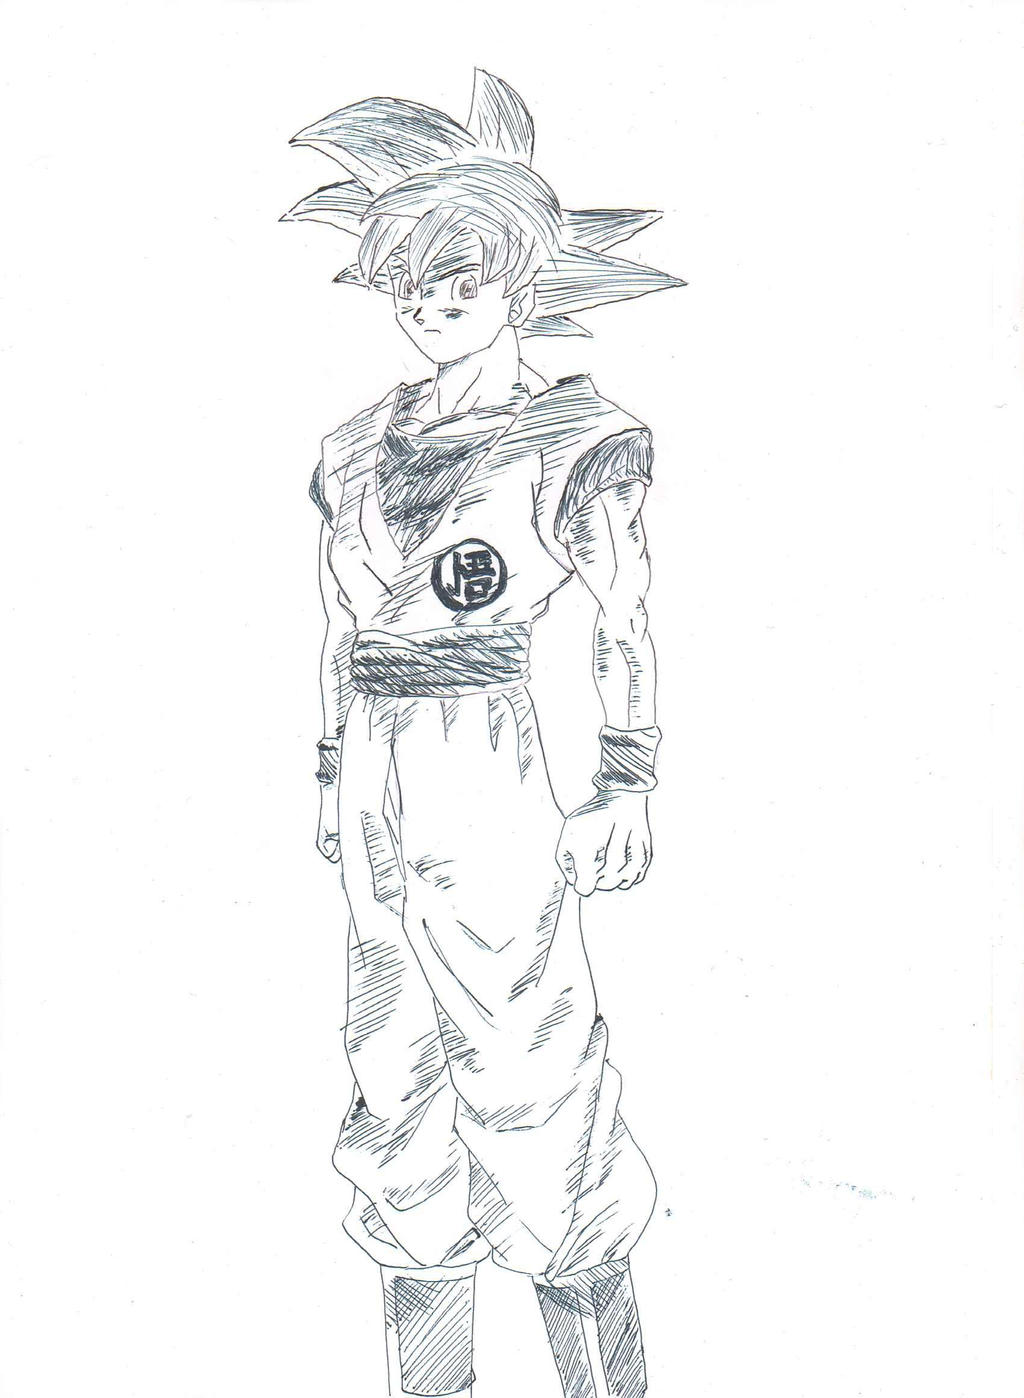 Goku Super Saiyan God by ozbushido on DeviantArt